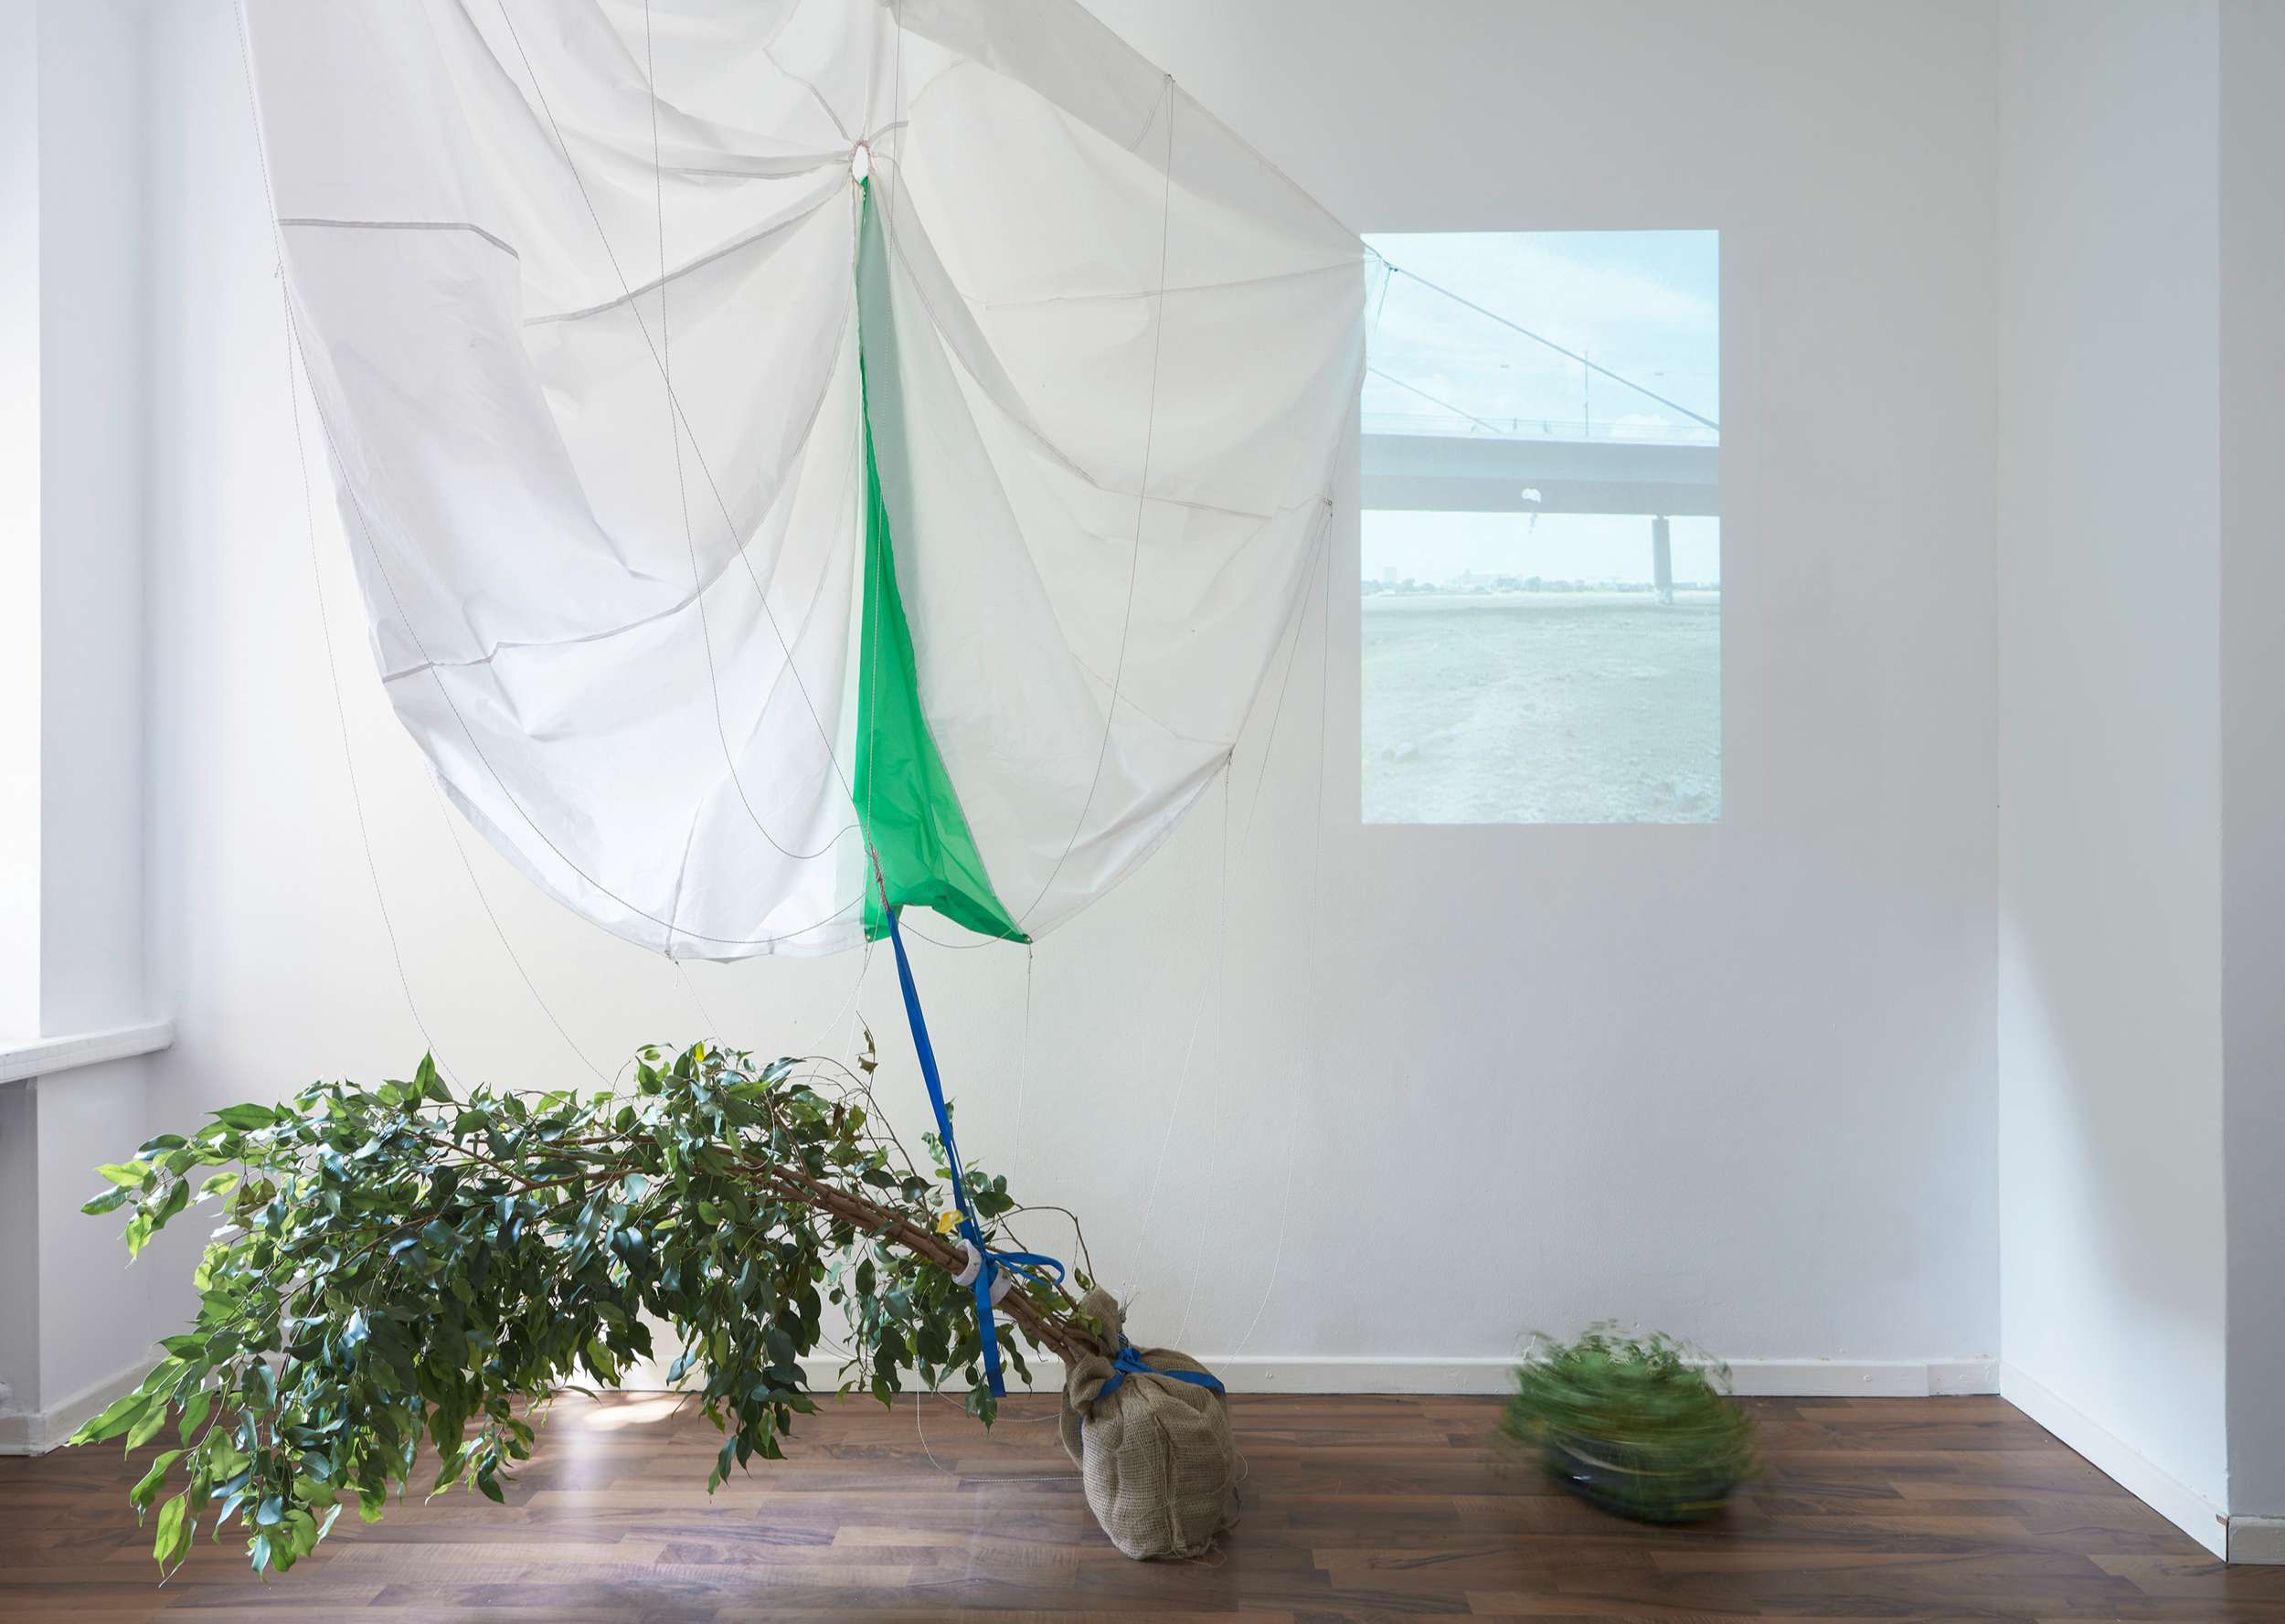 Jukai-Ryokō, "experiment with a ficus benjamini and a parachute", installation view, 2020, photo: Kai Werner Schmidt